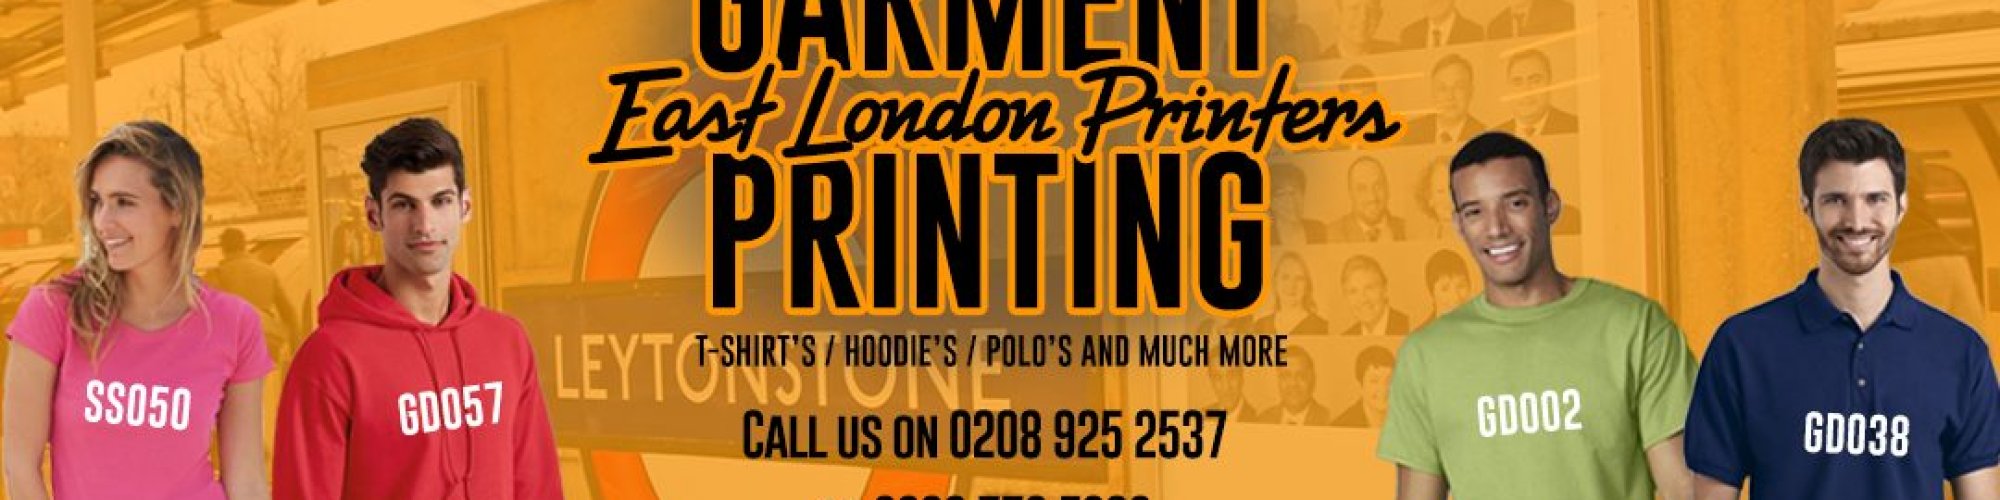 East London Printers